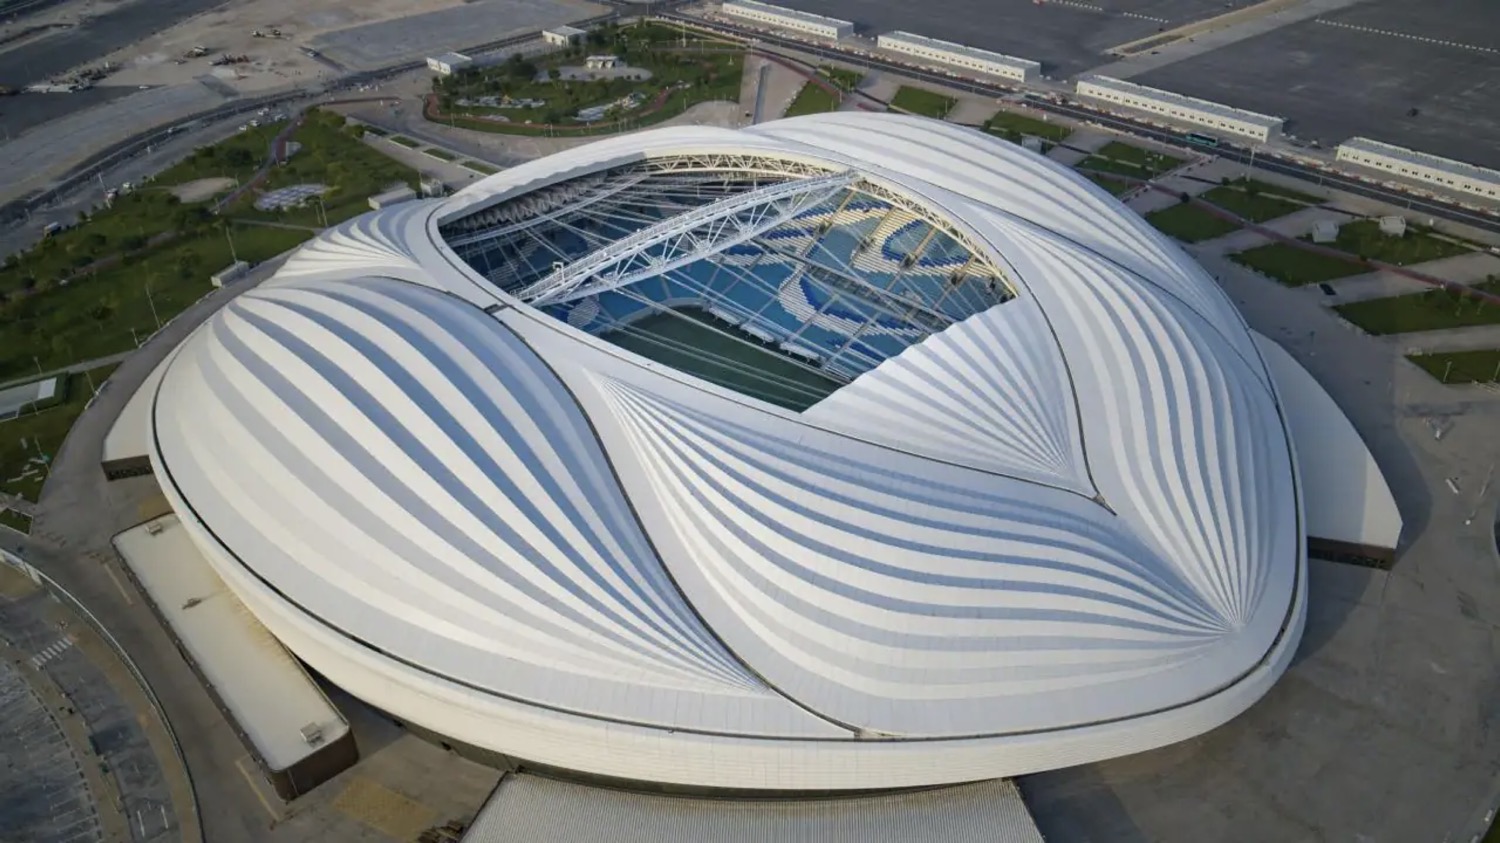 Chiêm ngưỡng 8 sân vận động tuyệt đẹp phục vụ World Cup 2022 ở Qatar - 6